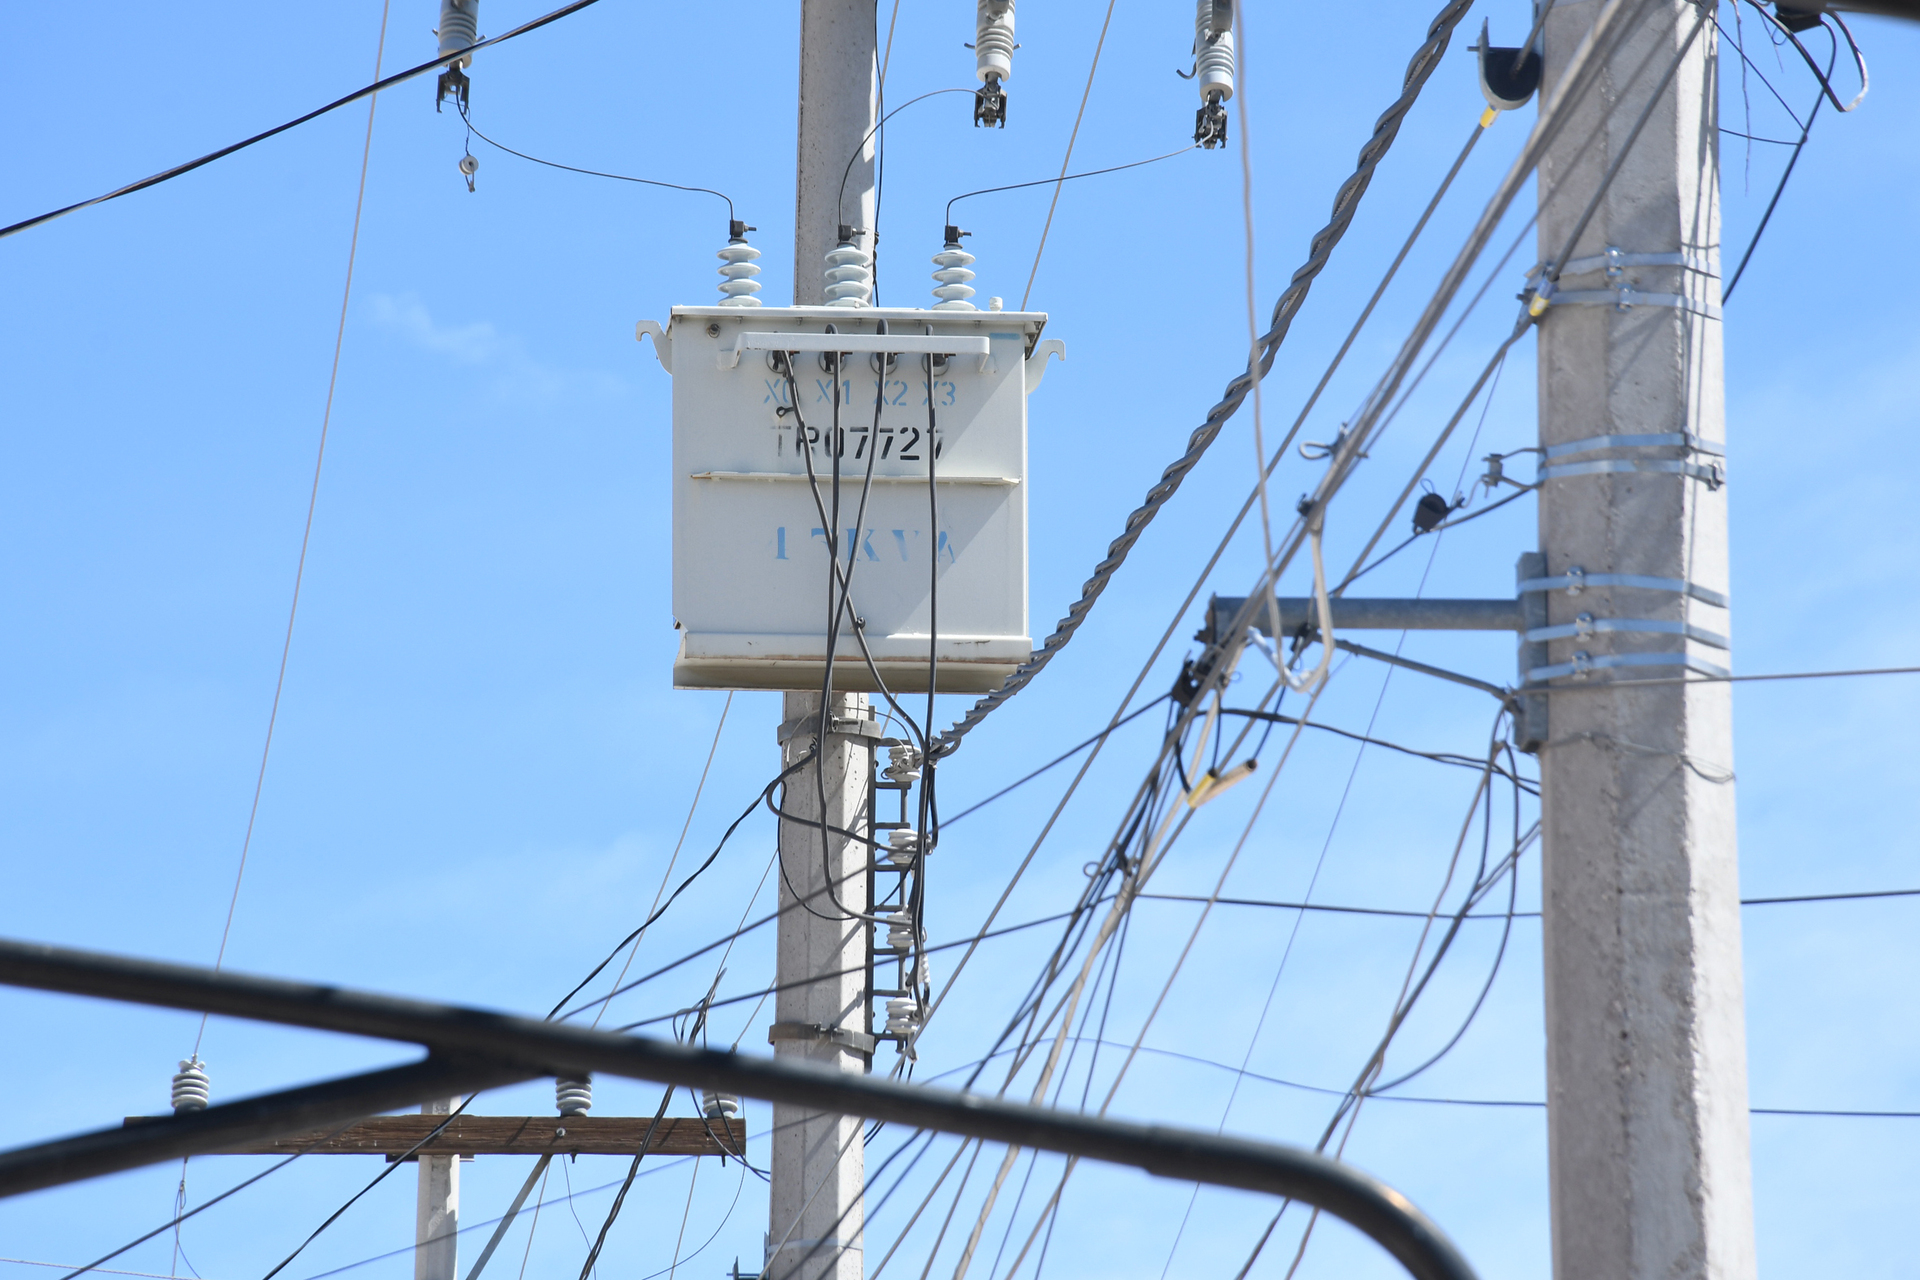 Calor provoca emergencia eléctrica, advierte IMCO necesidad de expansión en la red